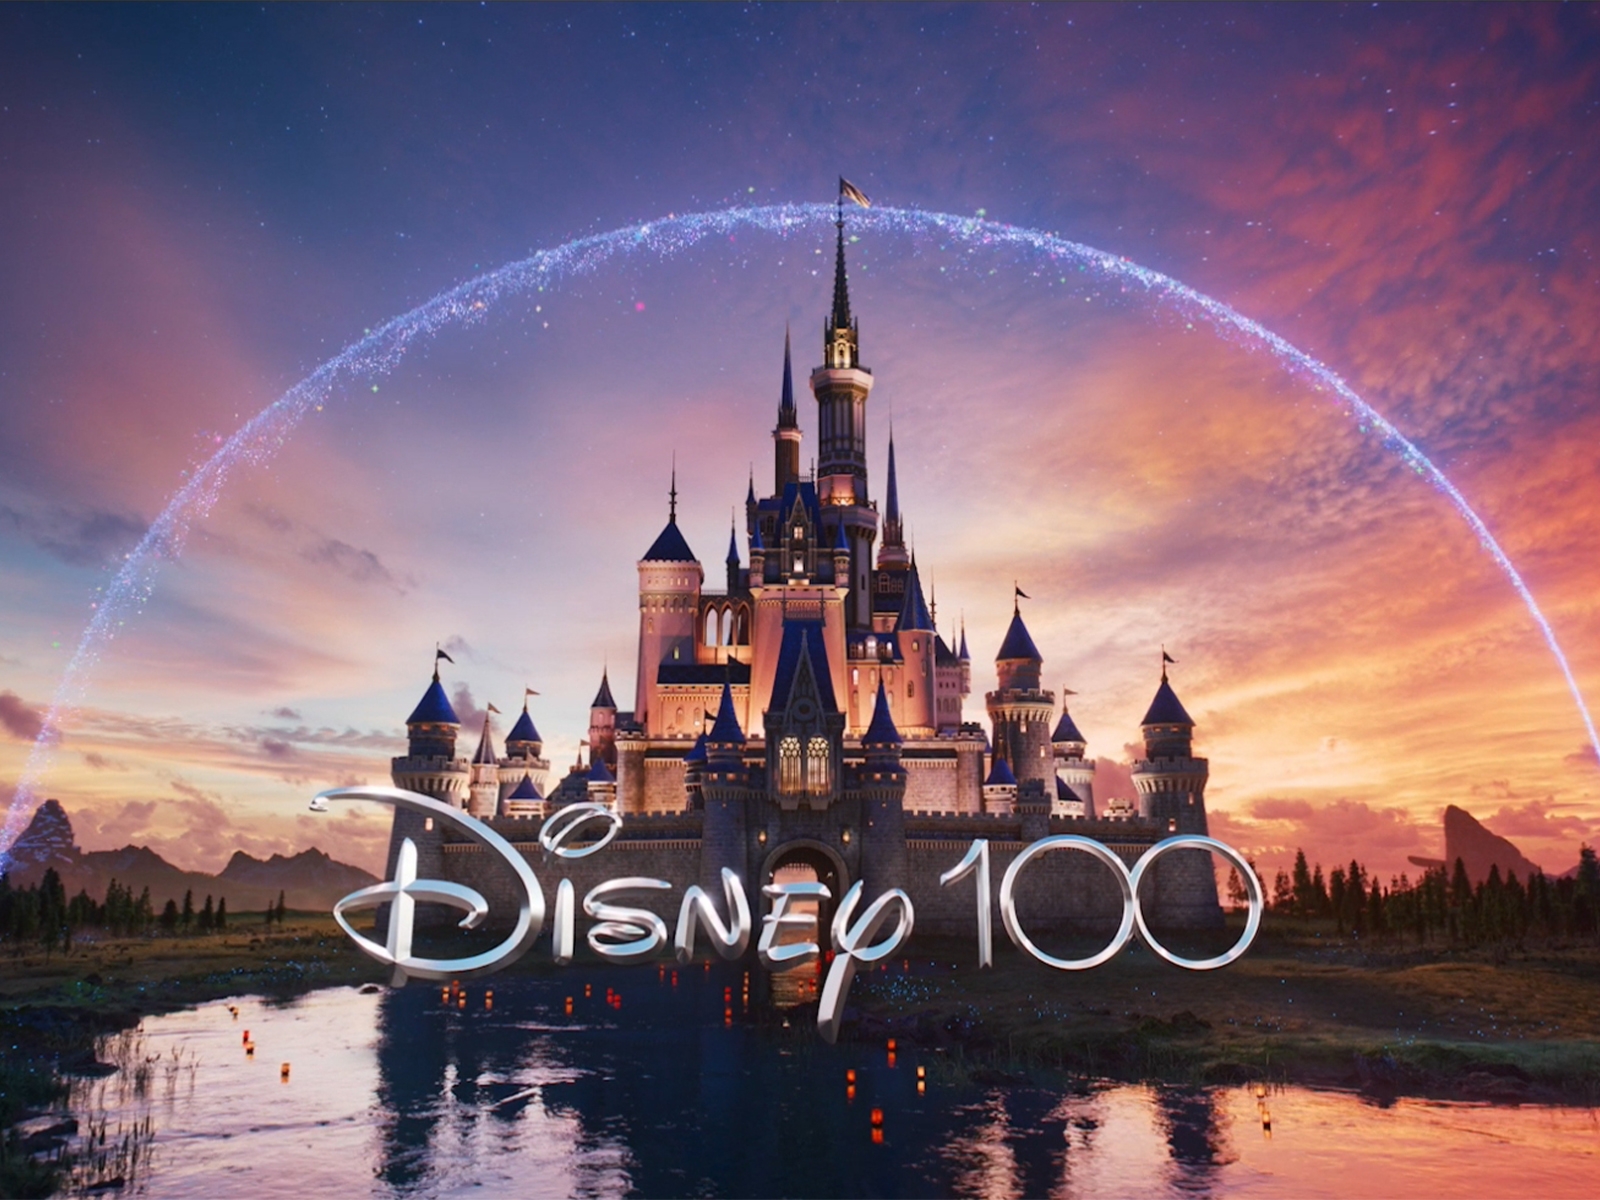 Disney迎來100週年慶！就讓我們一面聽最經典的10首動畫歌曲，一面去台北信義區找白金米奇打卡共襄盛舉！